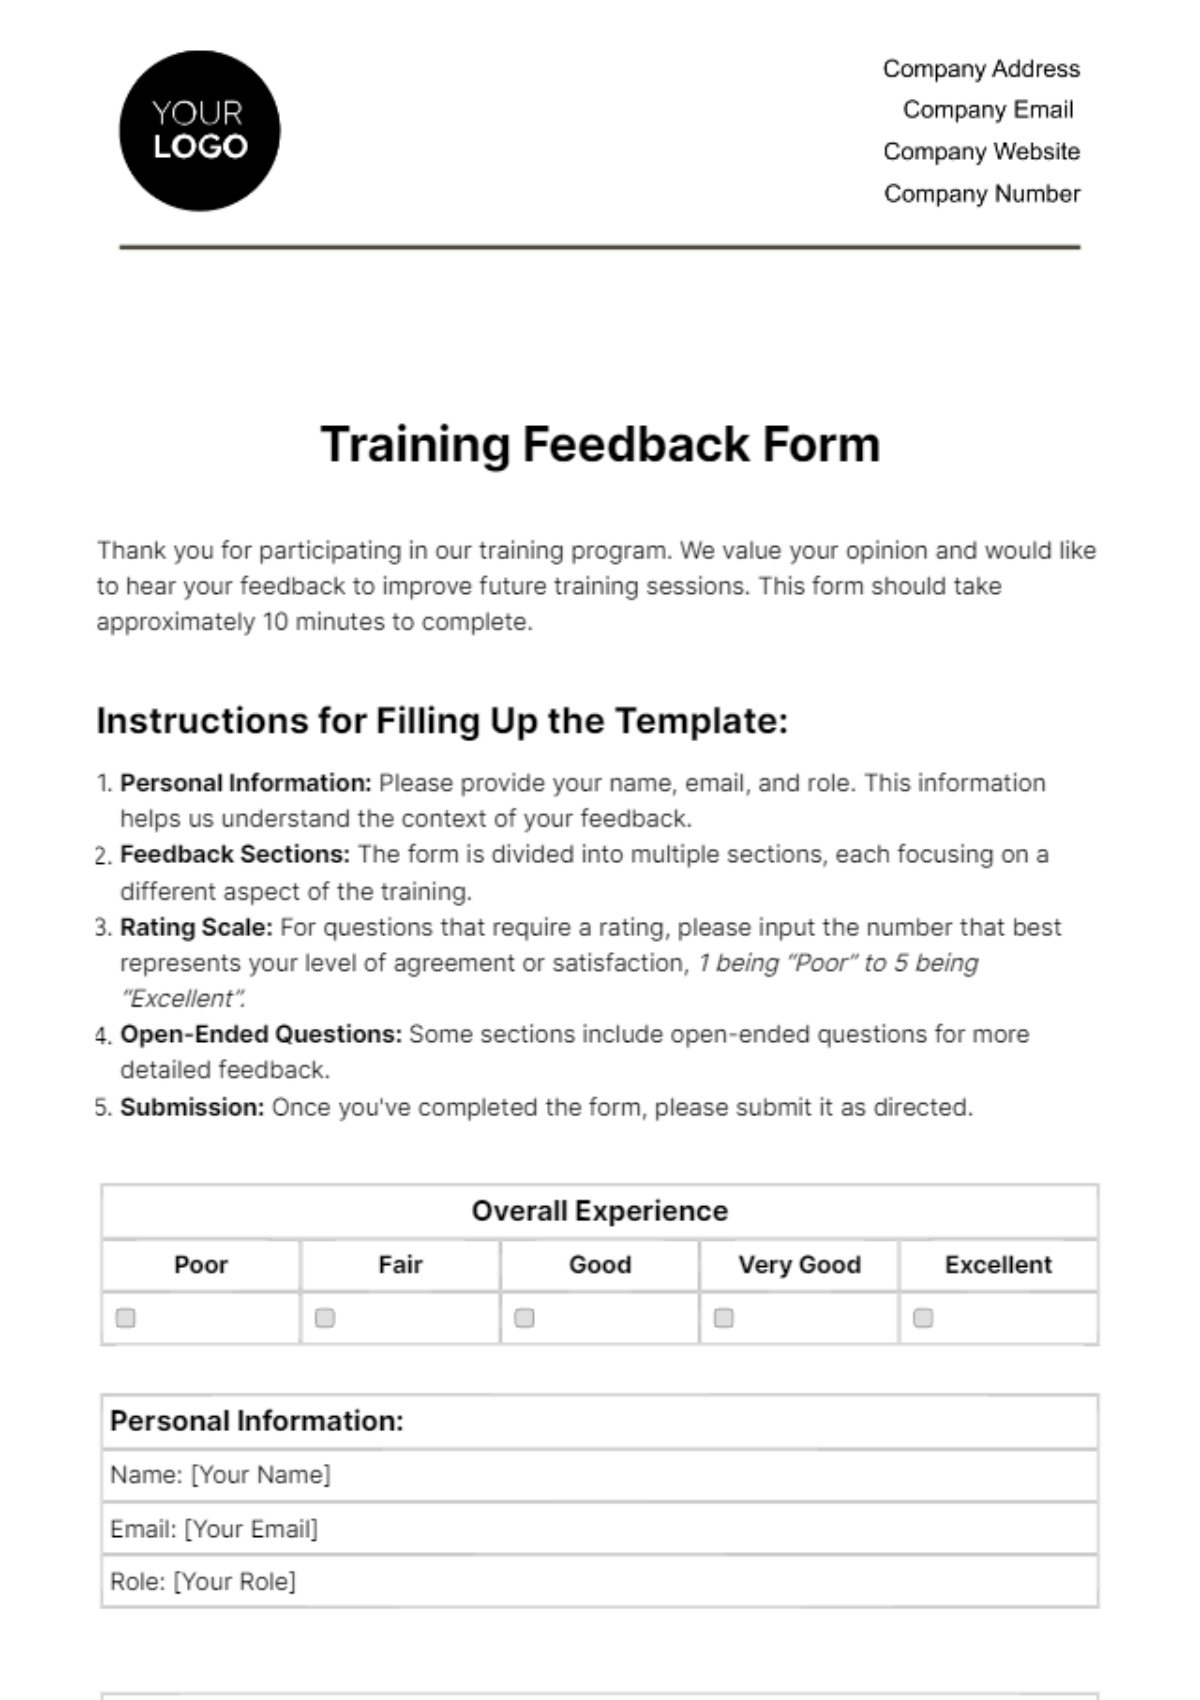 Free Training Feedback Form HR Template